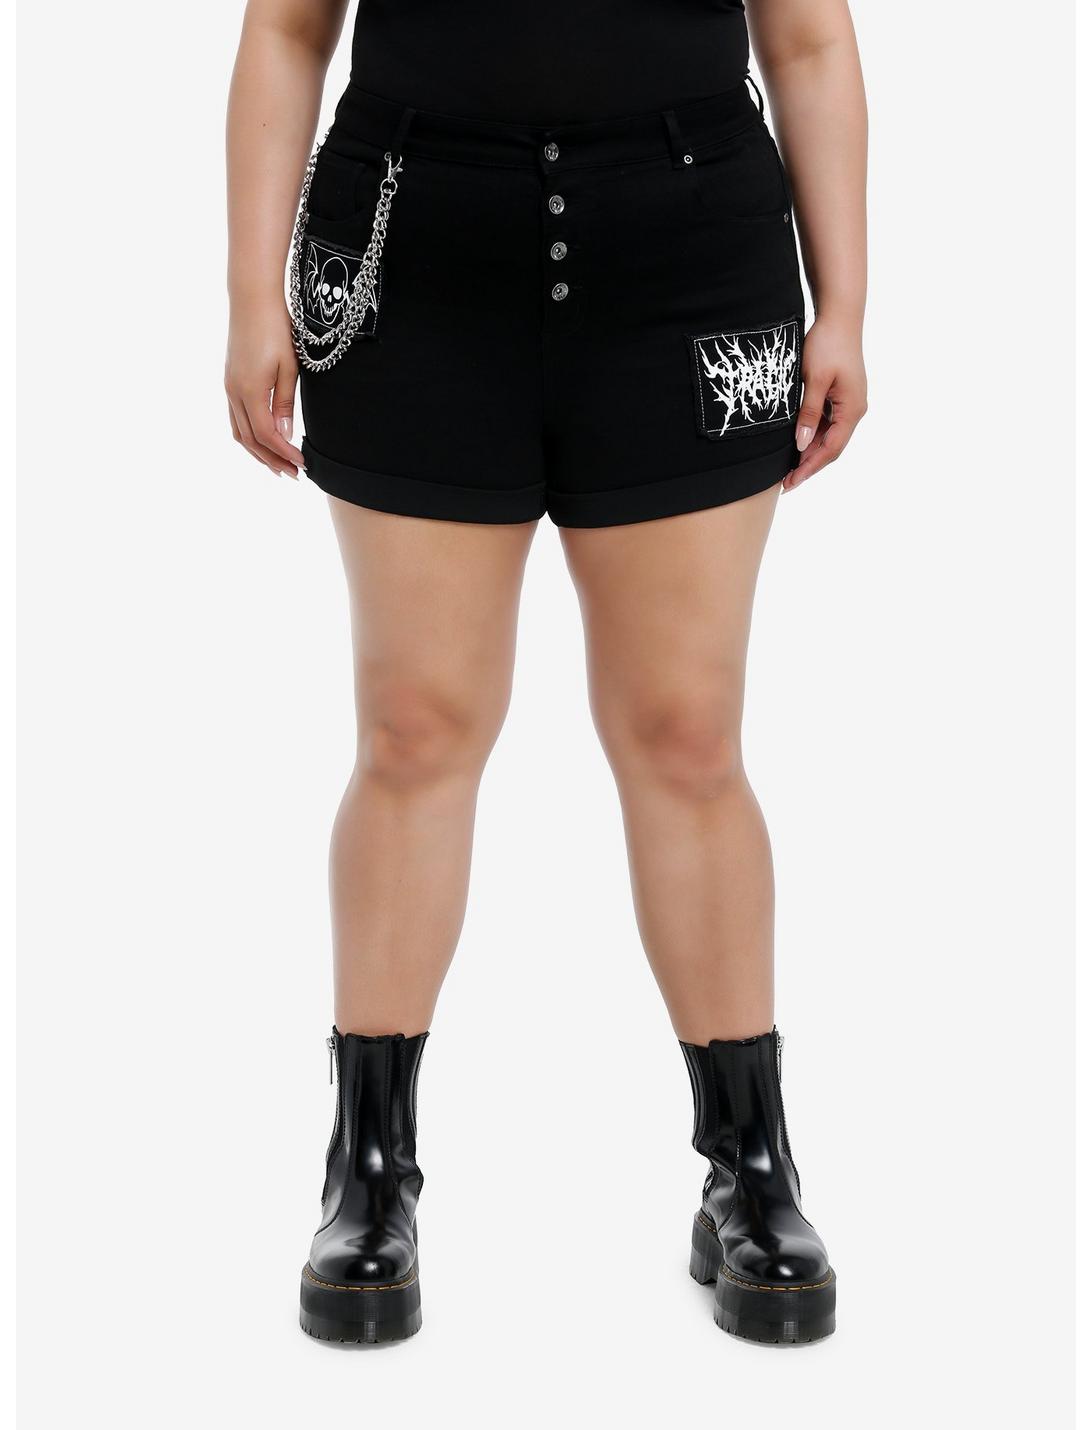 Black Punk Patches Side Chain Shorts Plus Size, BLACK, hi-res